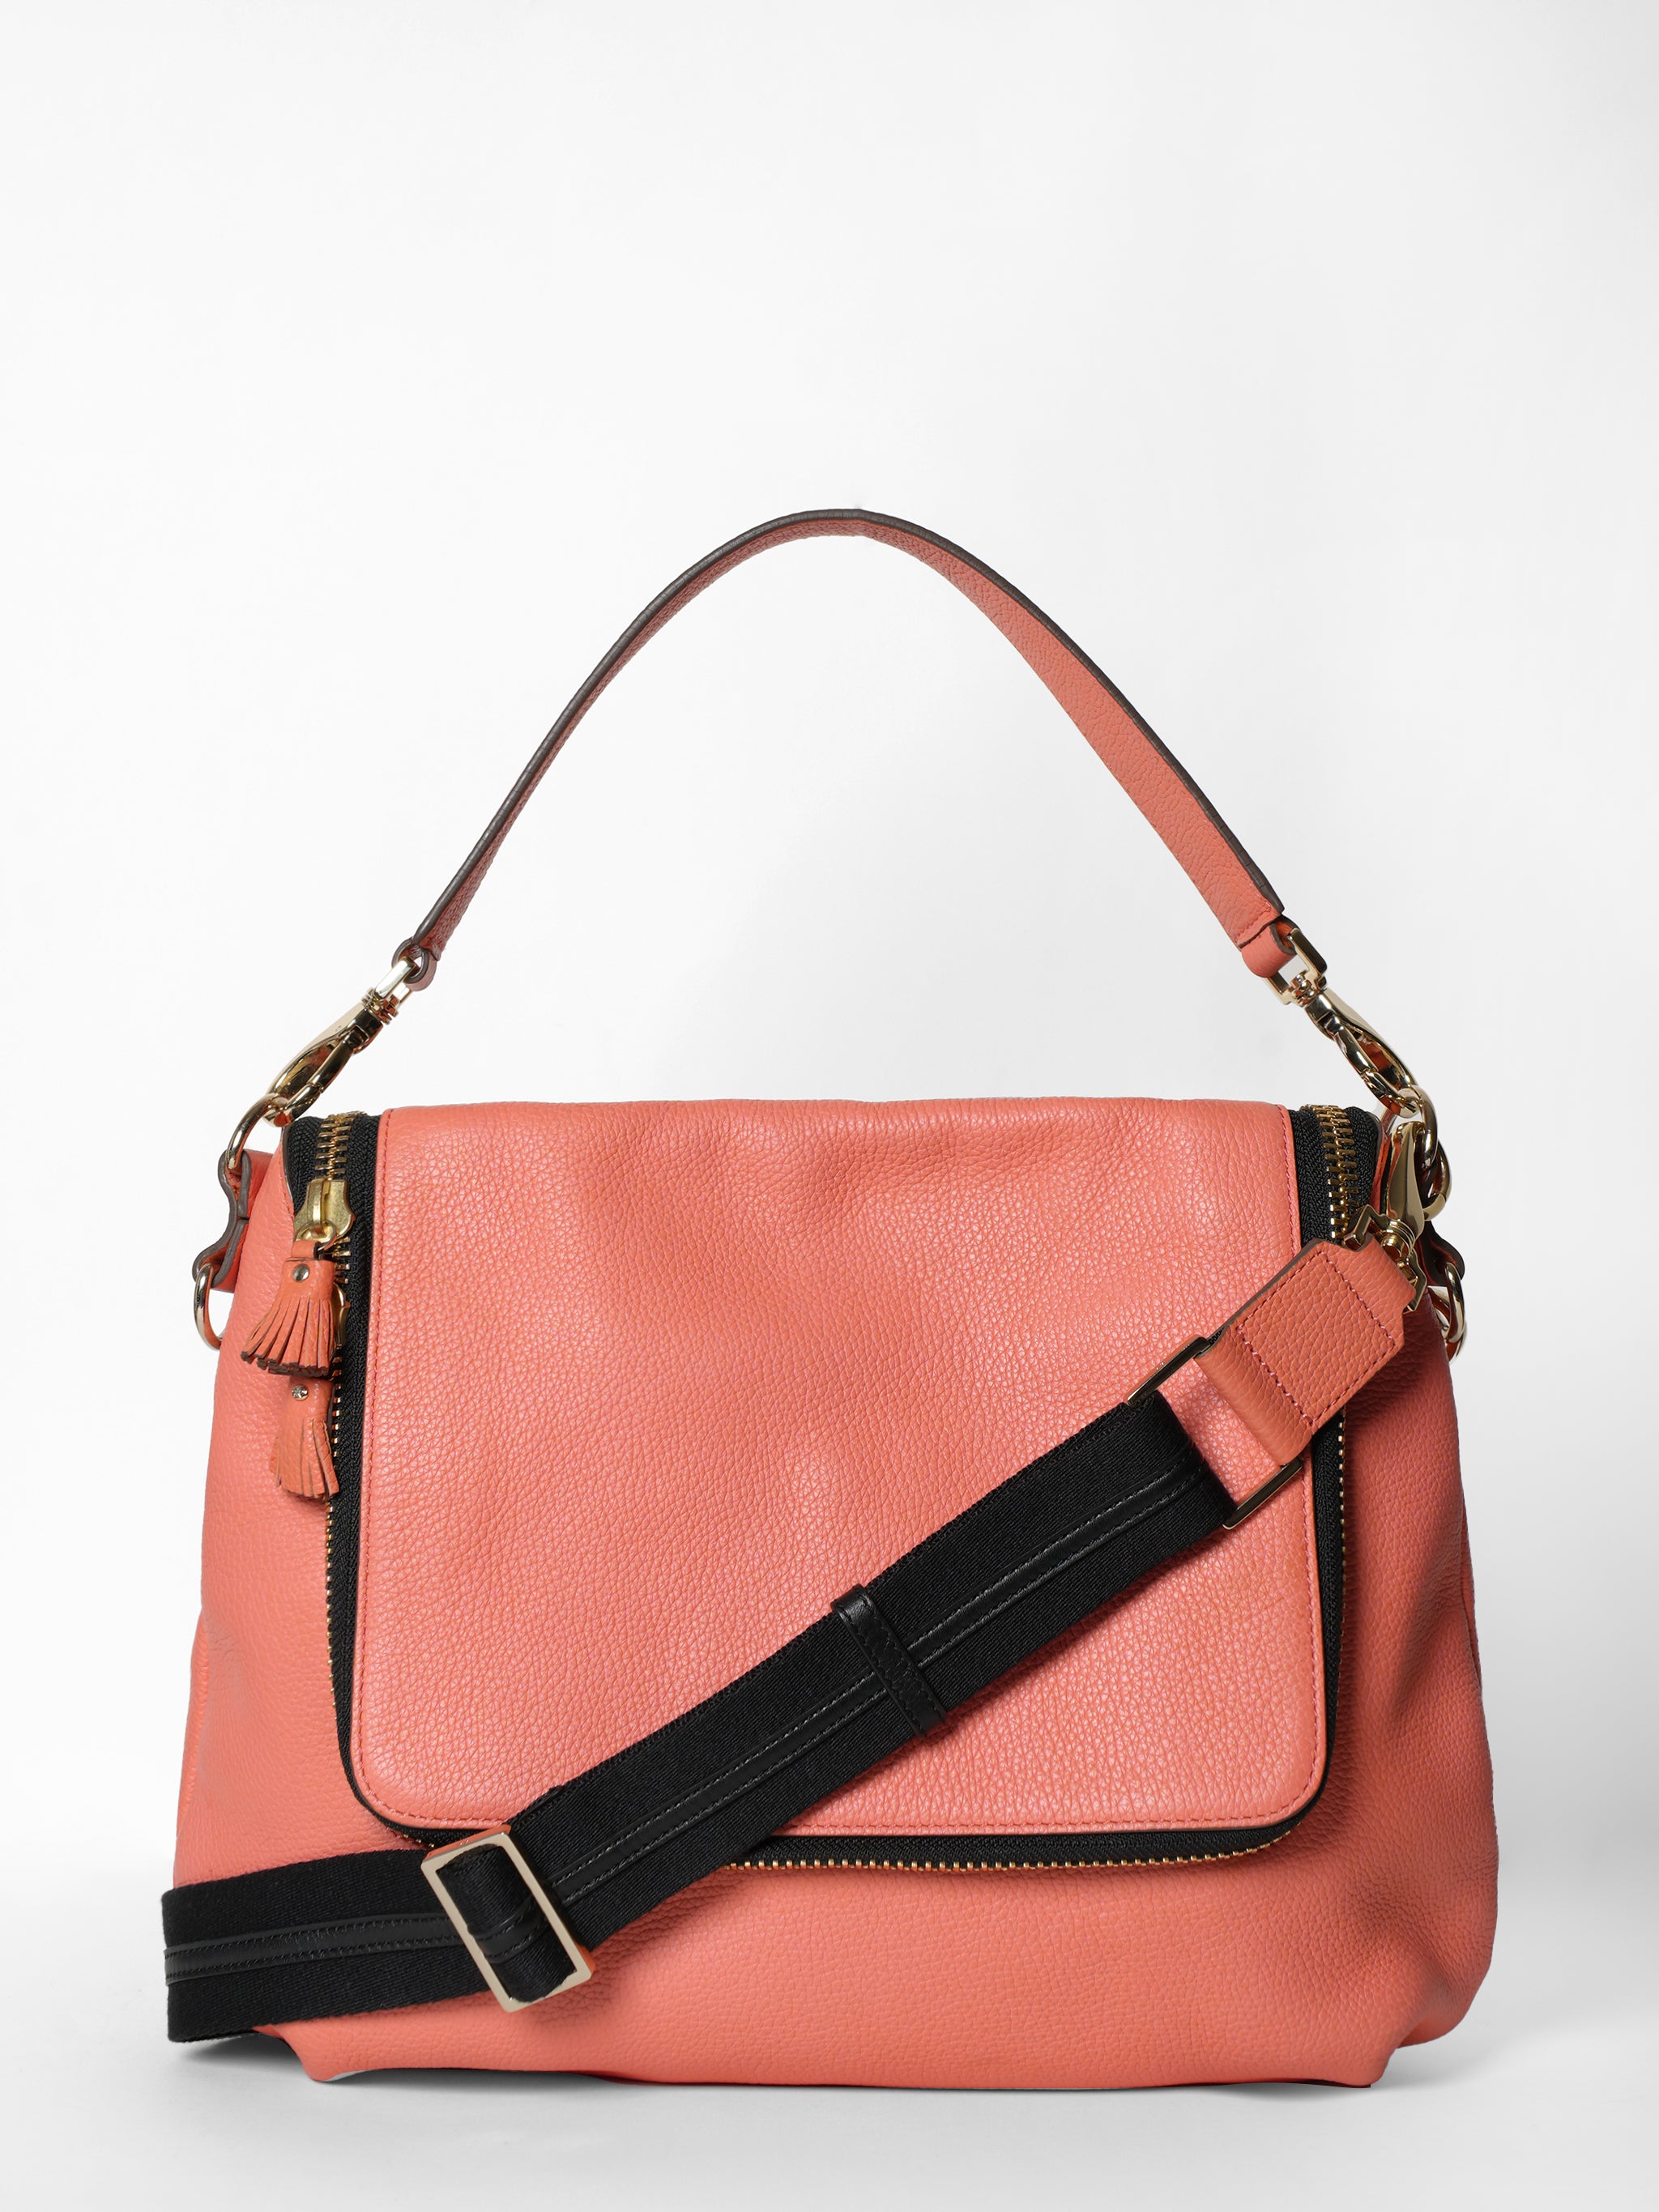 Anya Hindmarch Pink Sling Bag